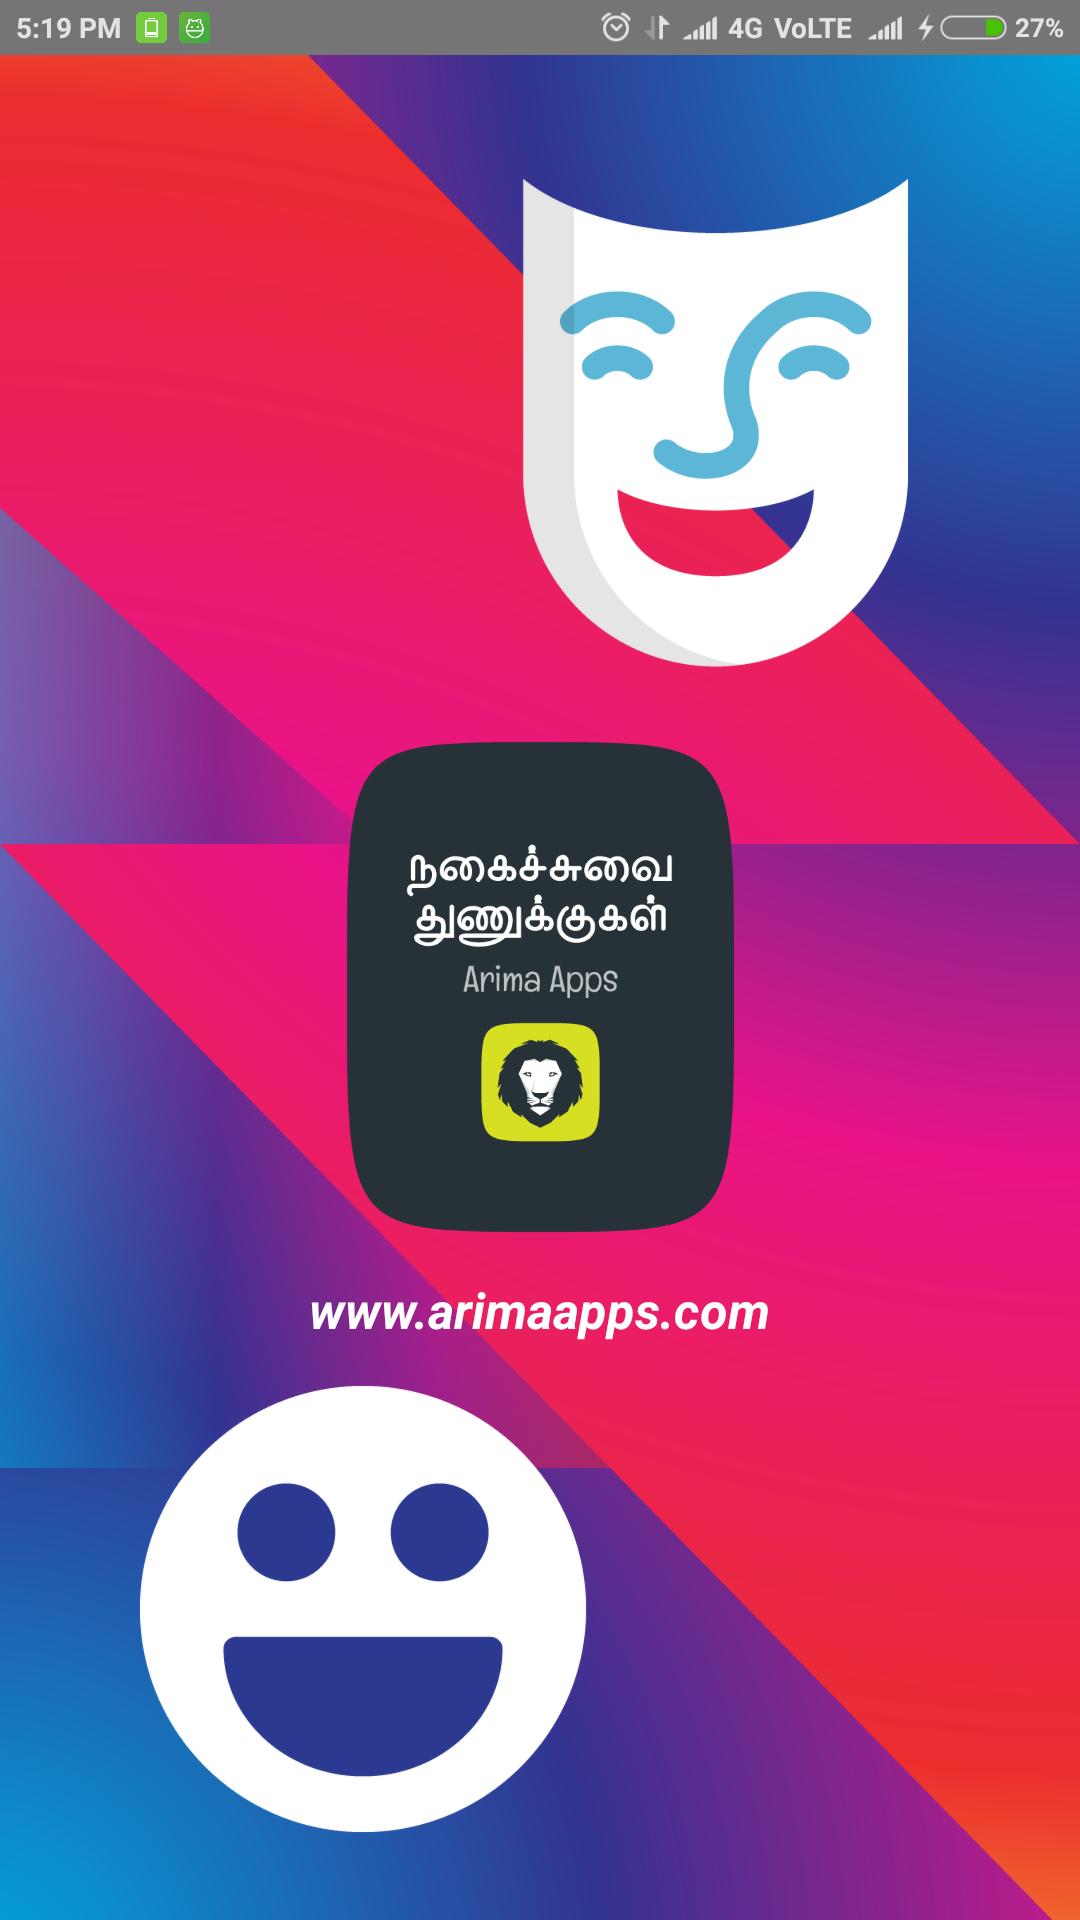 Tamil Jokes Comedy Funny Jokes Tamil Kadi Jokes For Android Apk